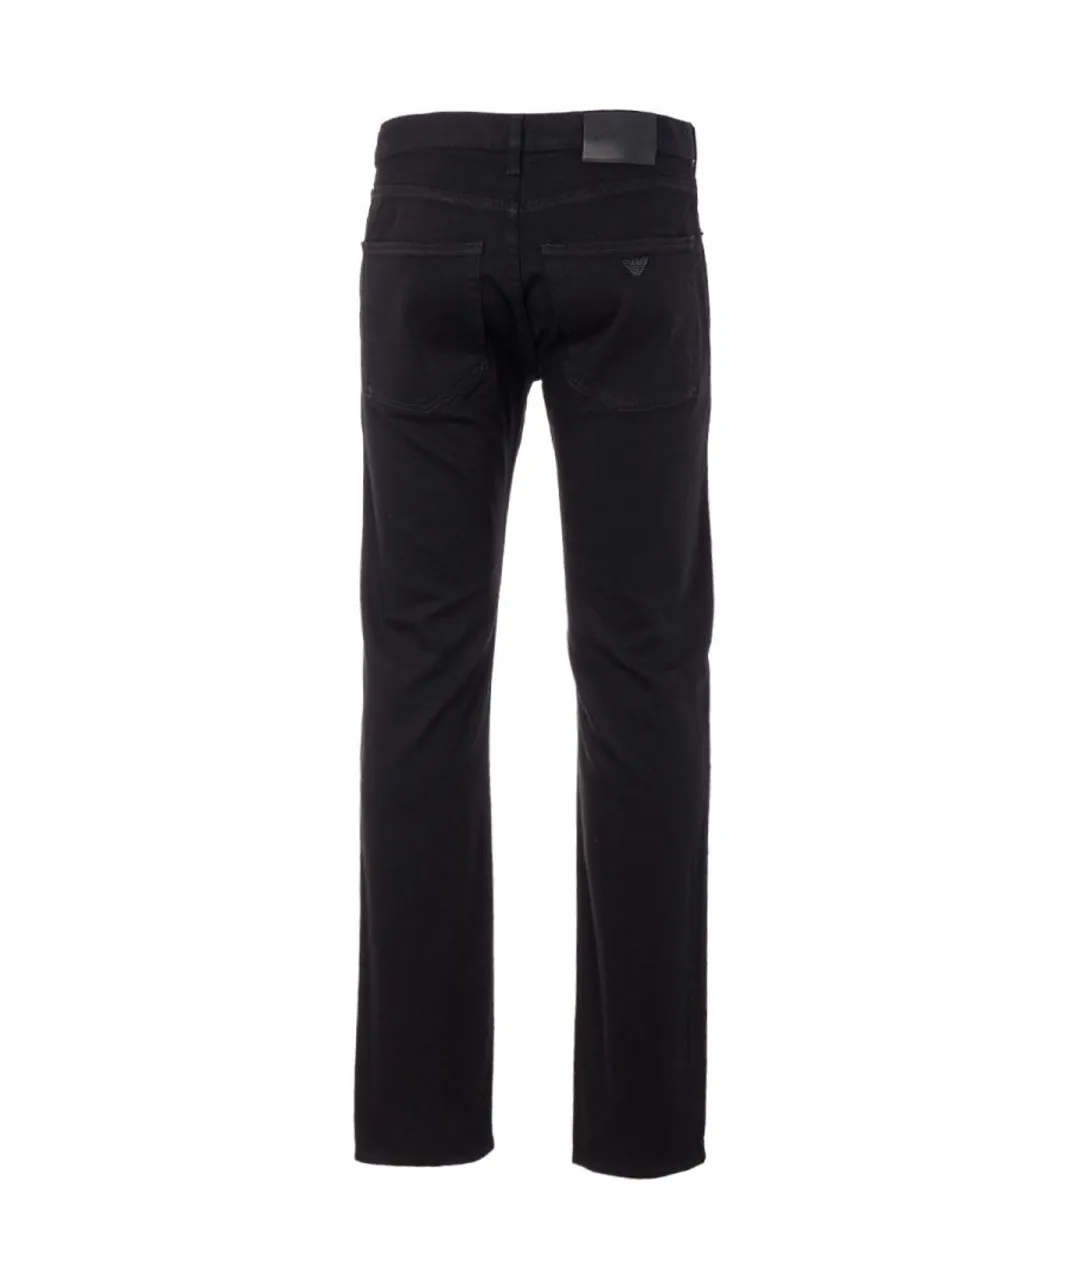 Emporio Armani Mens J45 Jeans in Black Cotton